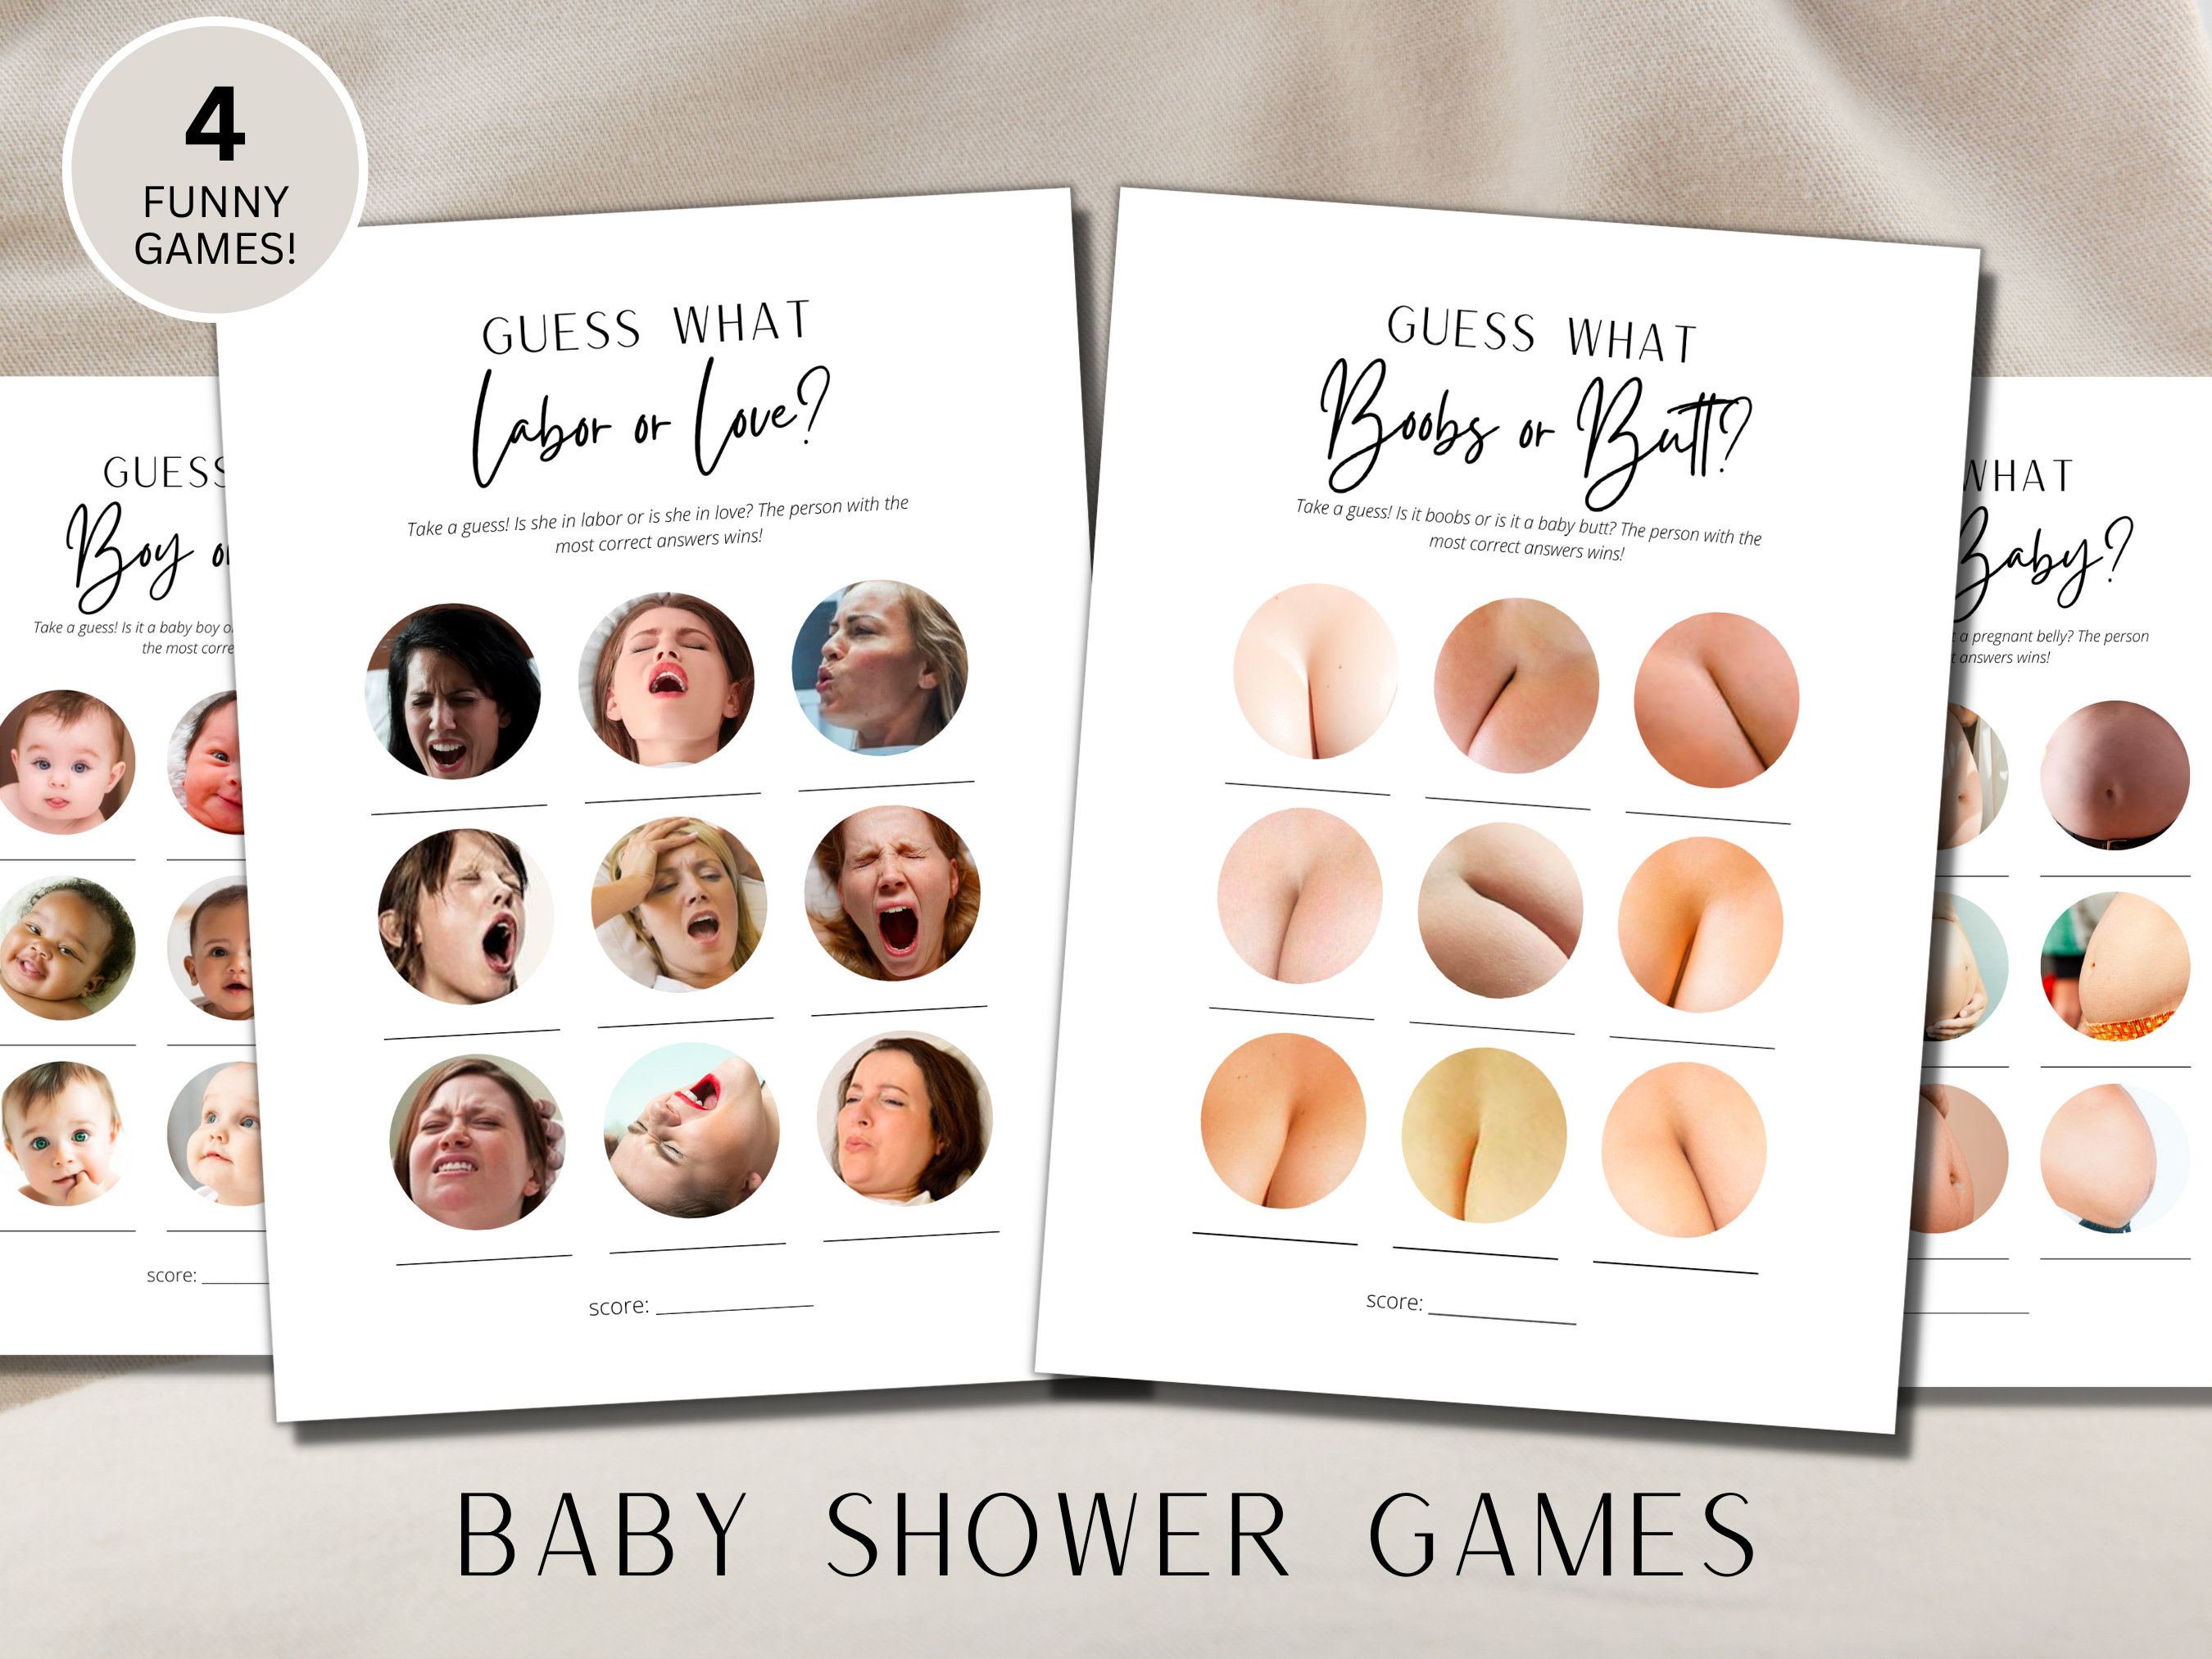 Boobs or Butt Quiz Baby Shower Game Minimalist Theme, Baby Shower